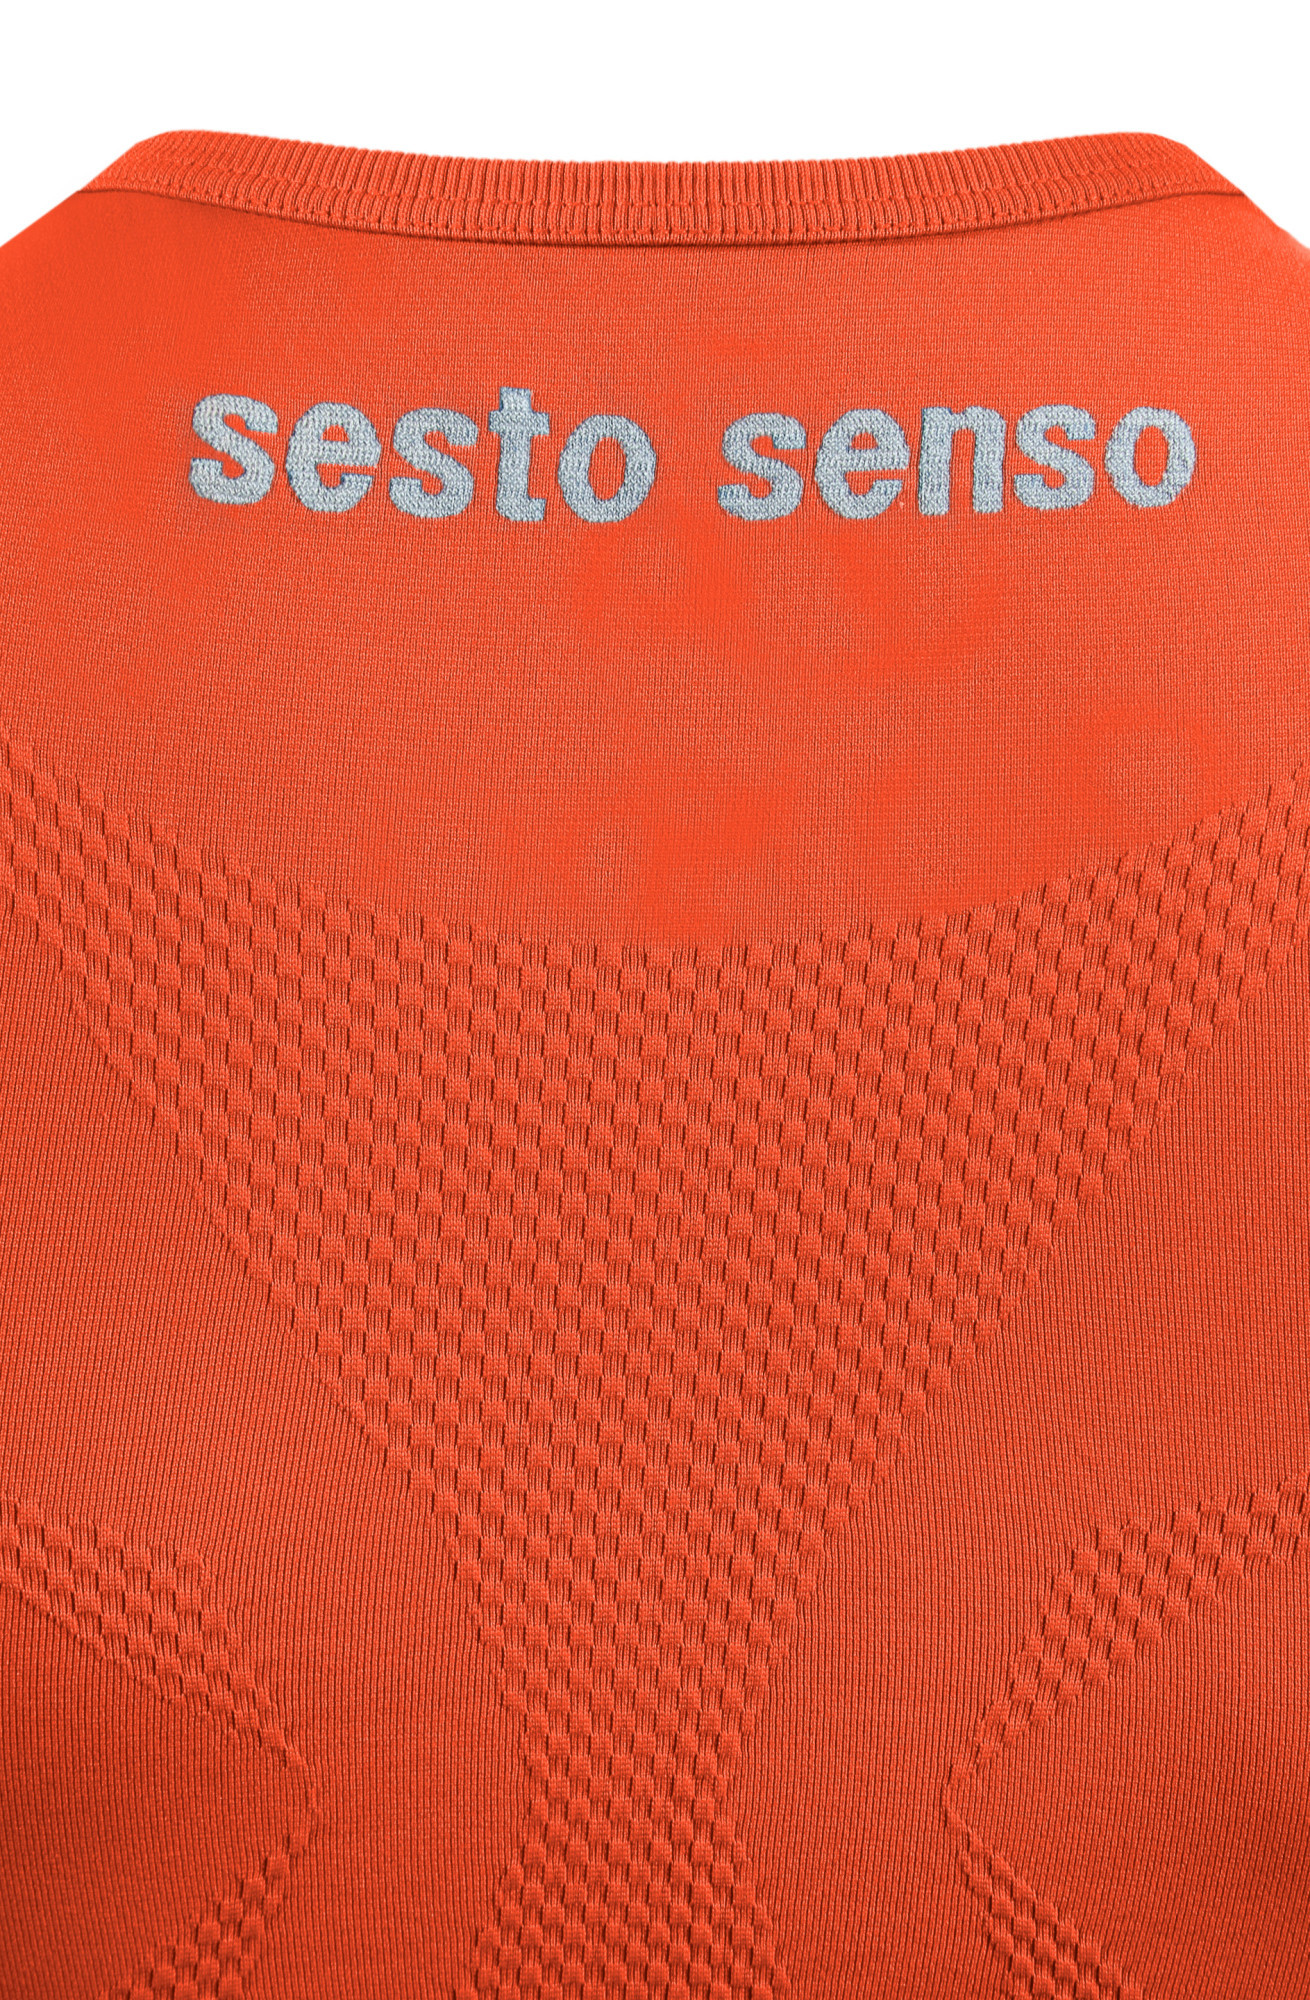 Sesto Senso Thermo Tílko CL38 Orange S/M